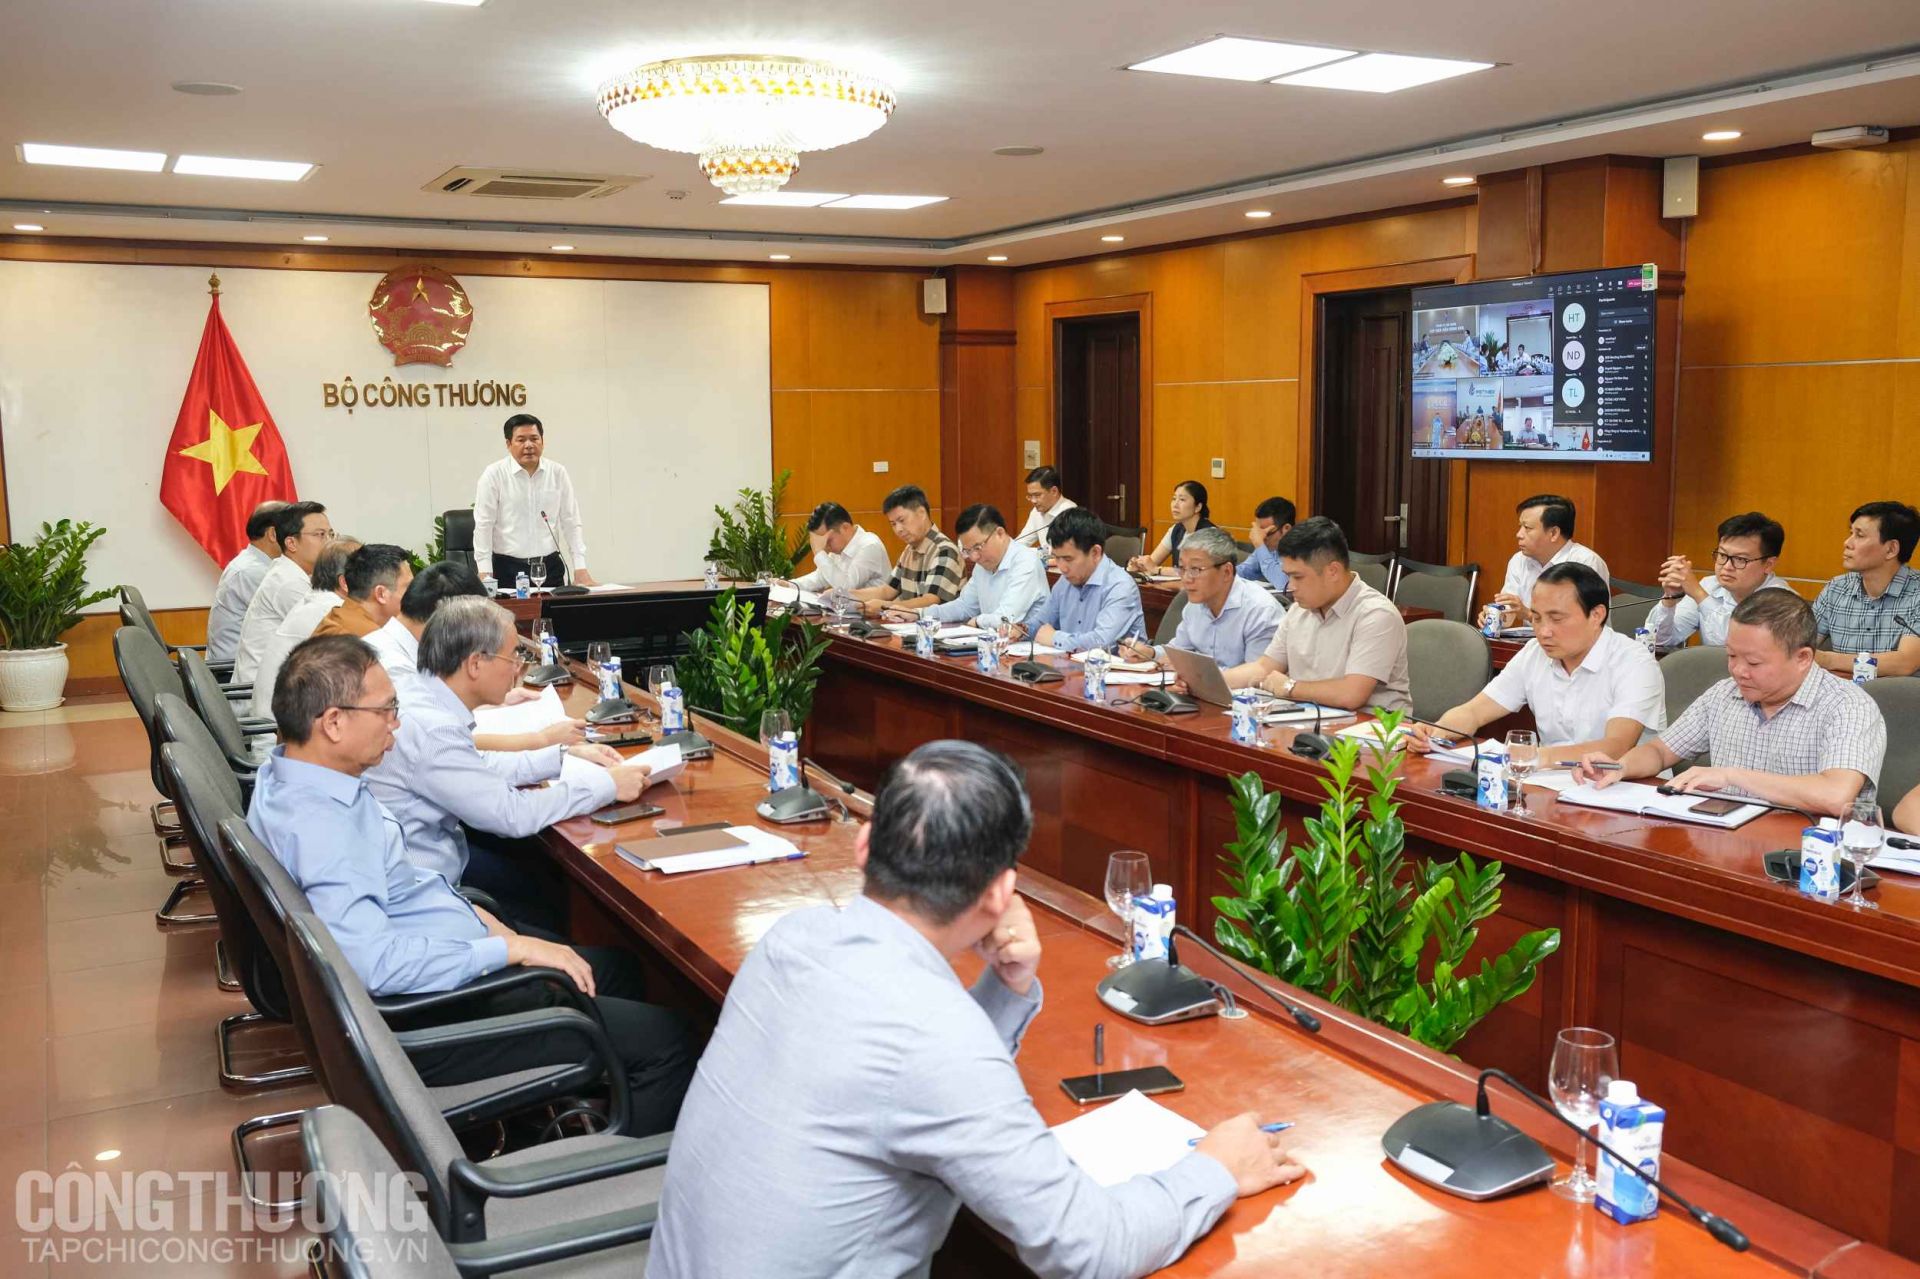 Bộ trưởng Bộ Công Thương Nguyễn Hồng Diên chủ trì buổi làm việc với các doanh nghiệp nhà nước hoạt động trong lĩnh vực sản xuất, kinh doanh xăng dầu